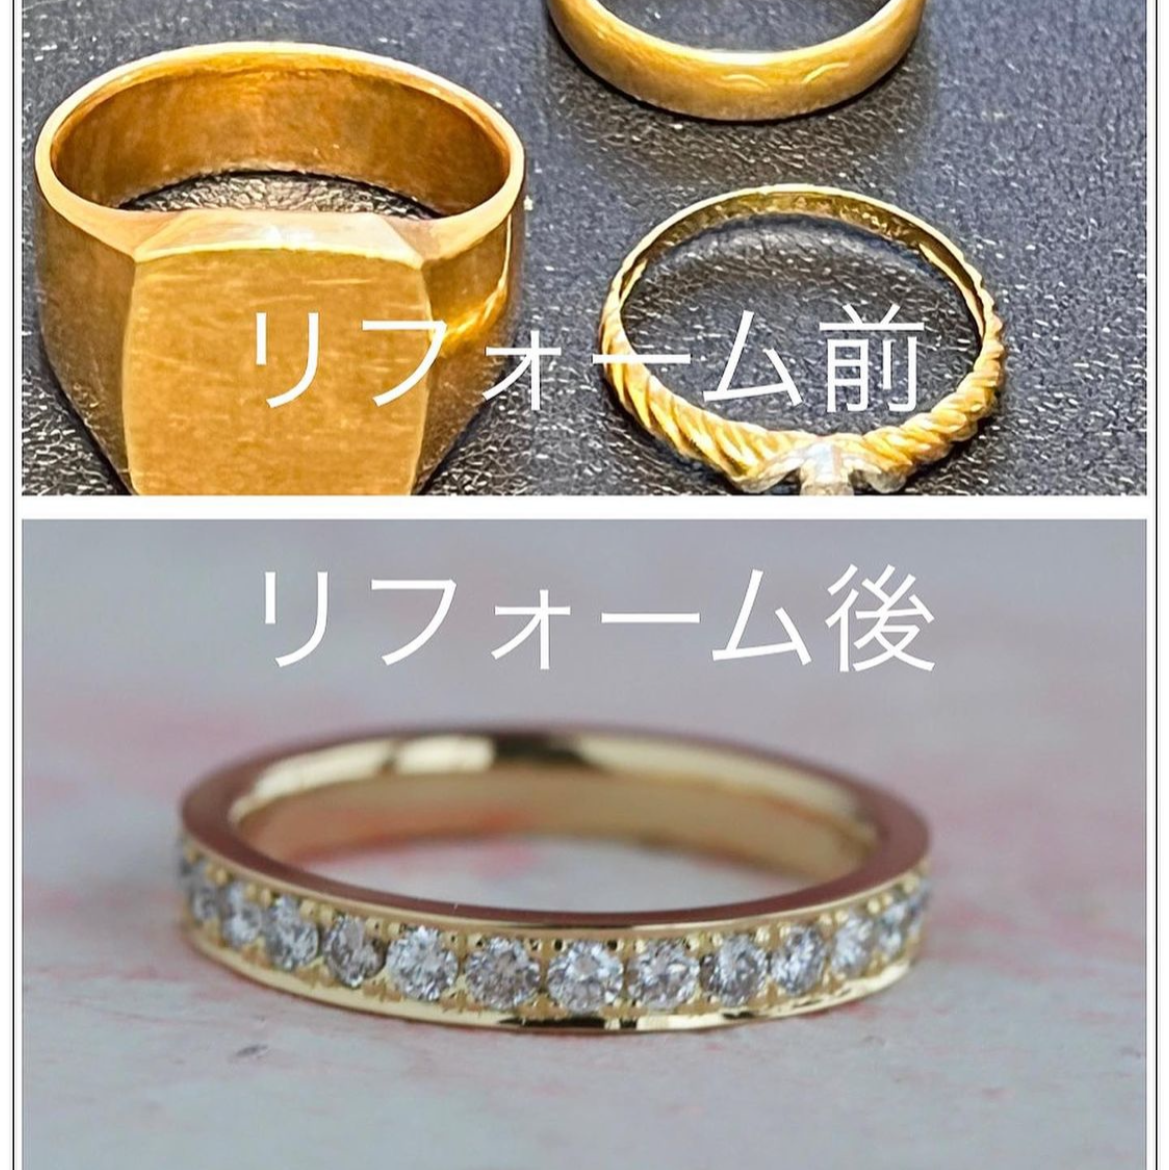 形見の18金の指輪をエタニティリングにリフォーム。 | オリジナル 